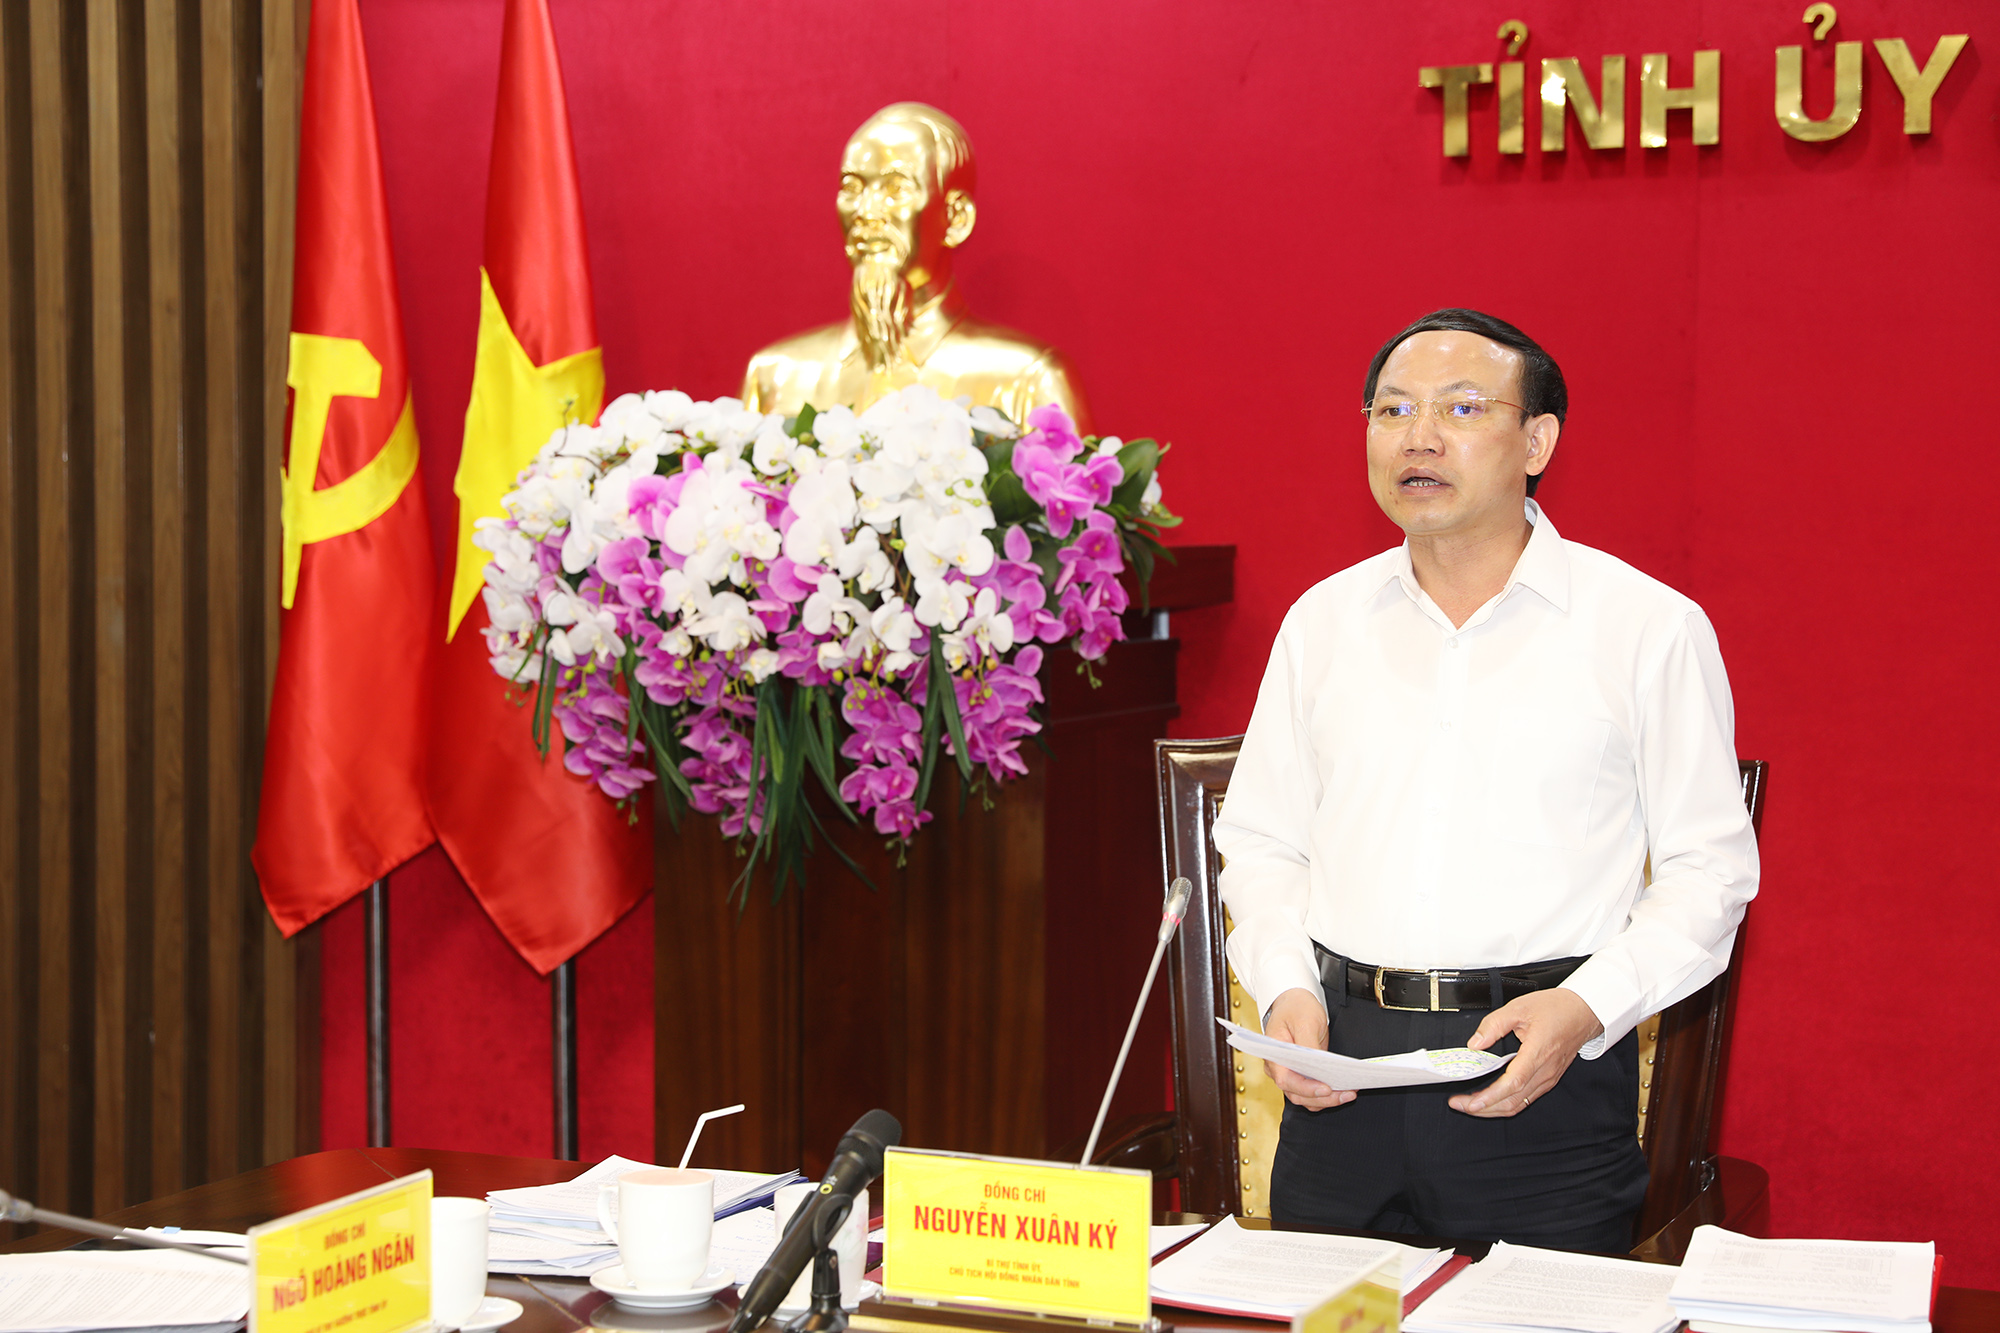 Đồng chí Nguyễn Xuân Ký, Bí thư Tỉnh ủy, Chủ tịch HĐND tỉnh kết luận